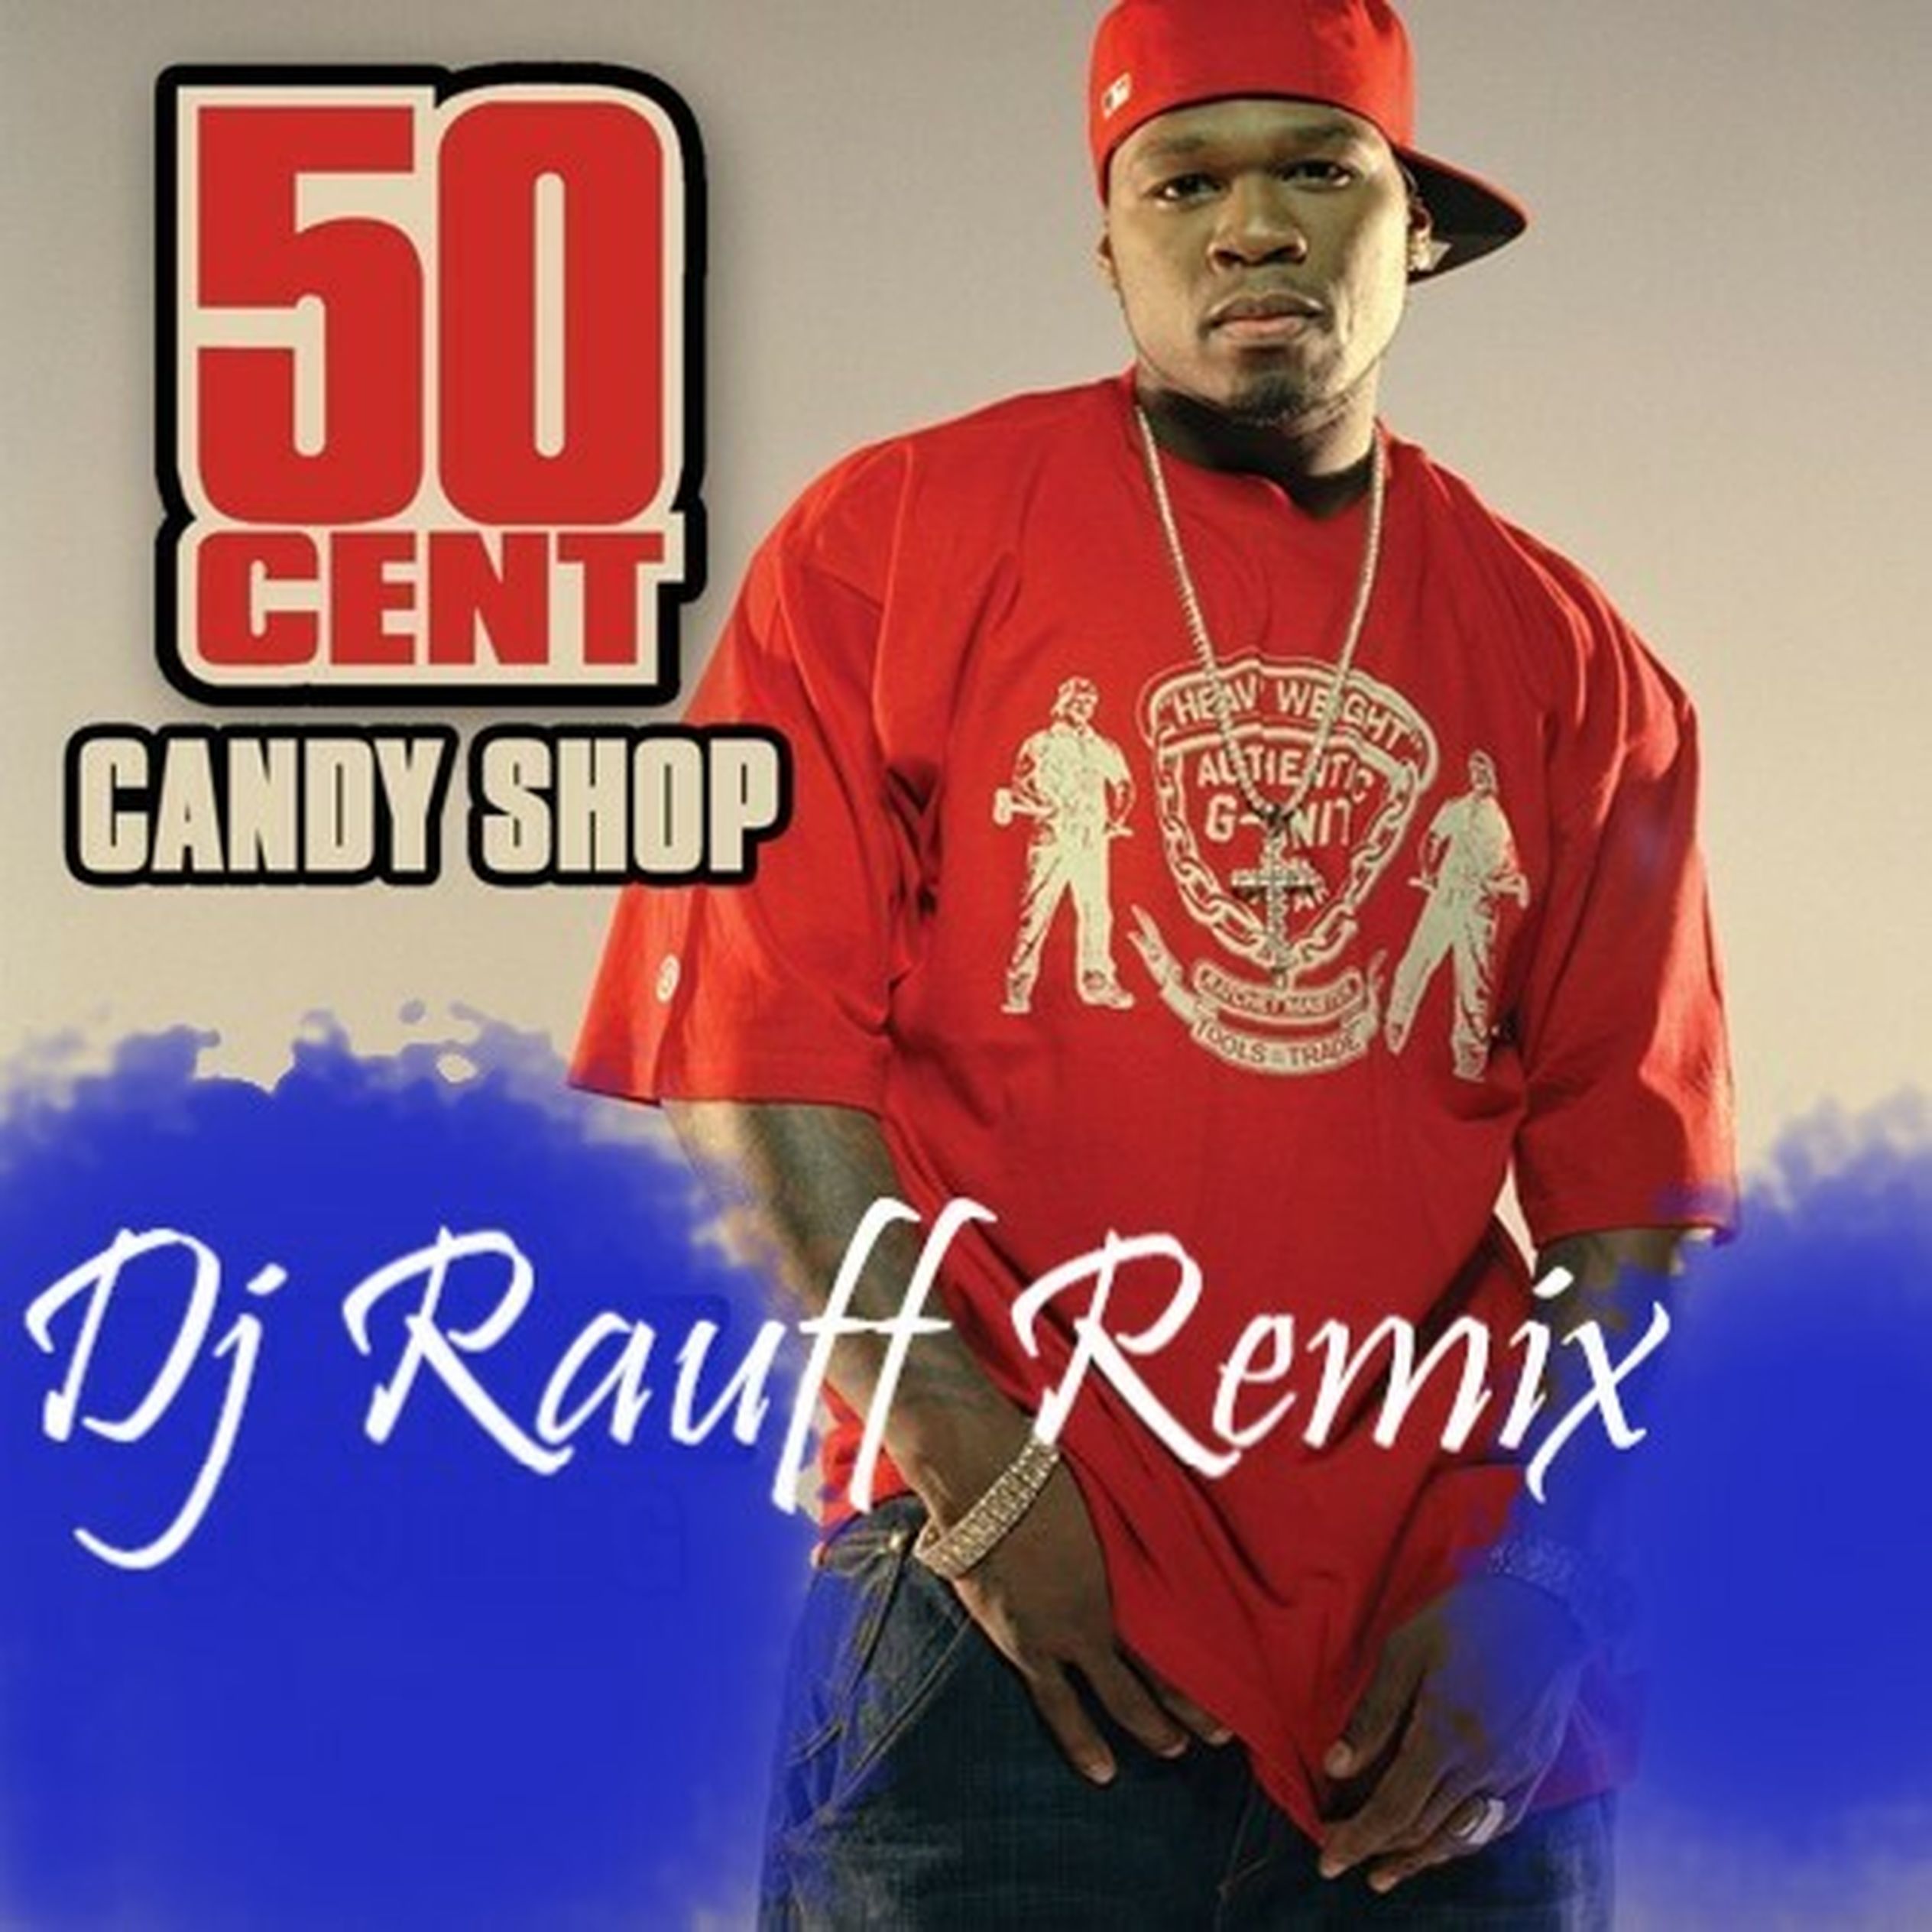 50 Cent - Candy shop альбом. 50 Сент Кэнди шоп. DJ Rauff. 50 Cent Candy shop Remix Bass. Кэнди шоп ремикс